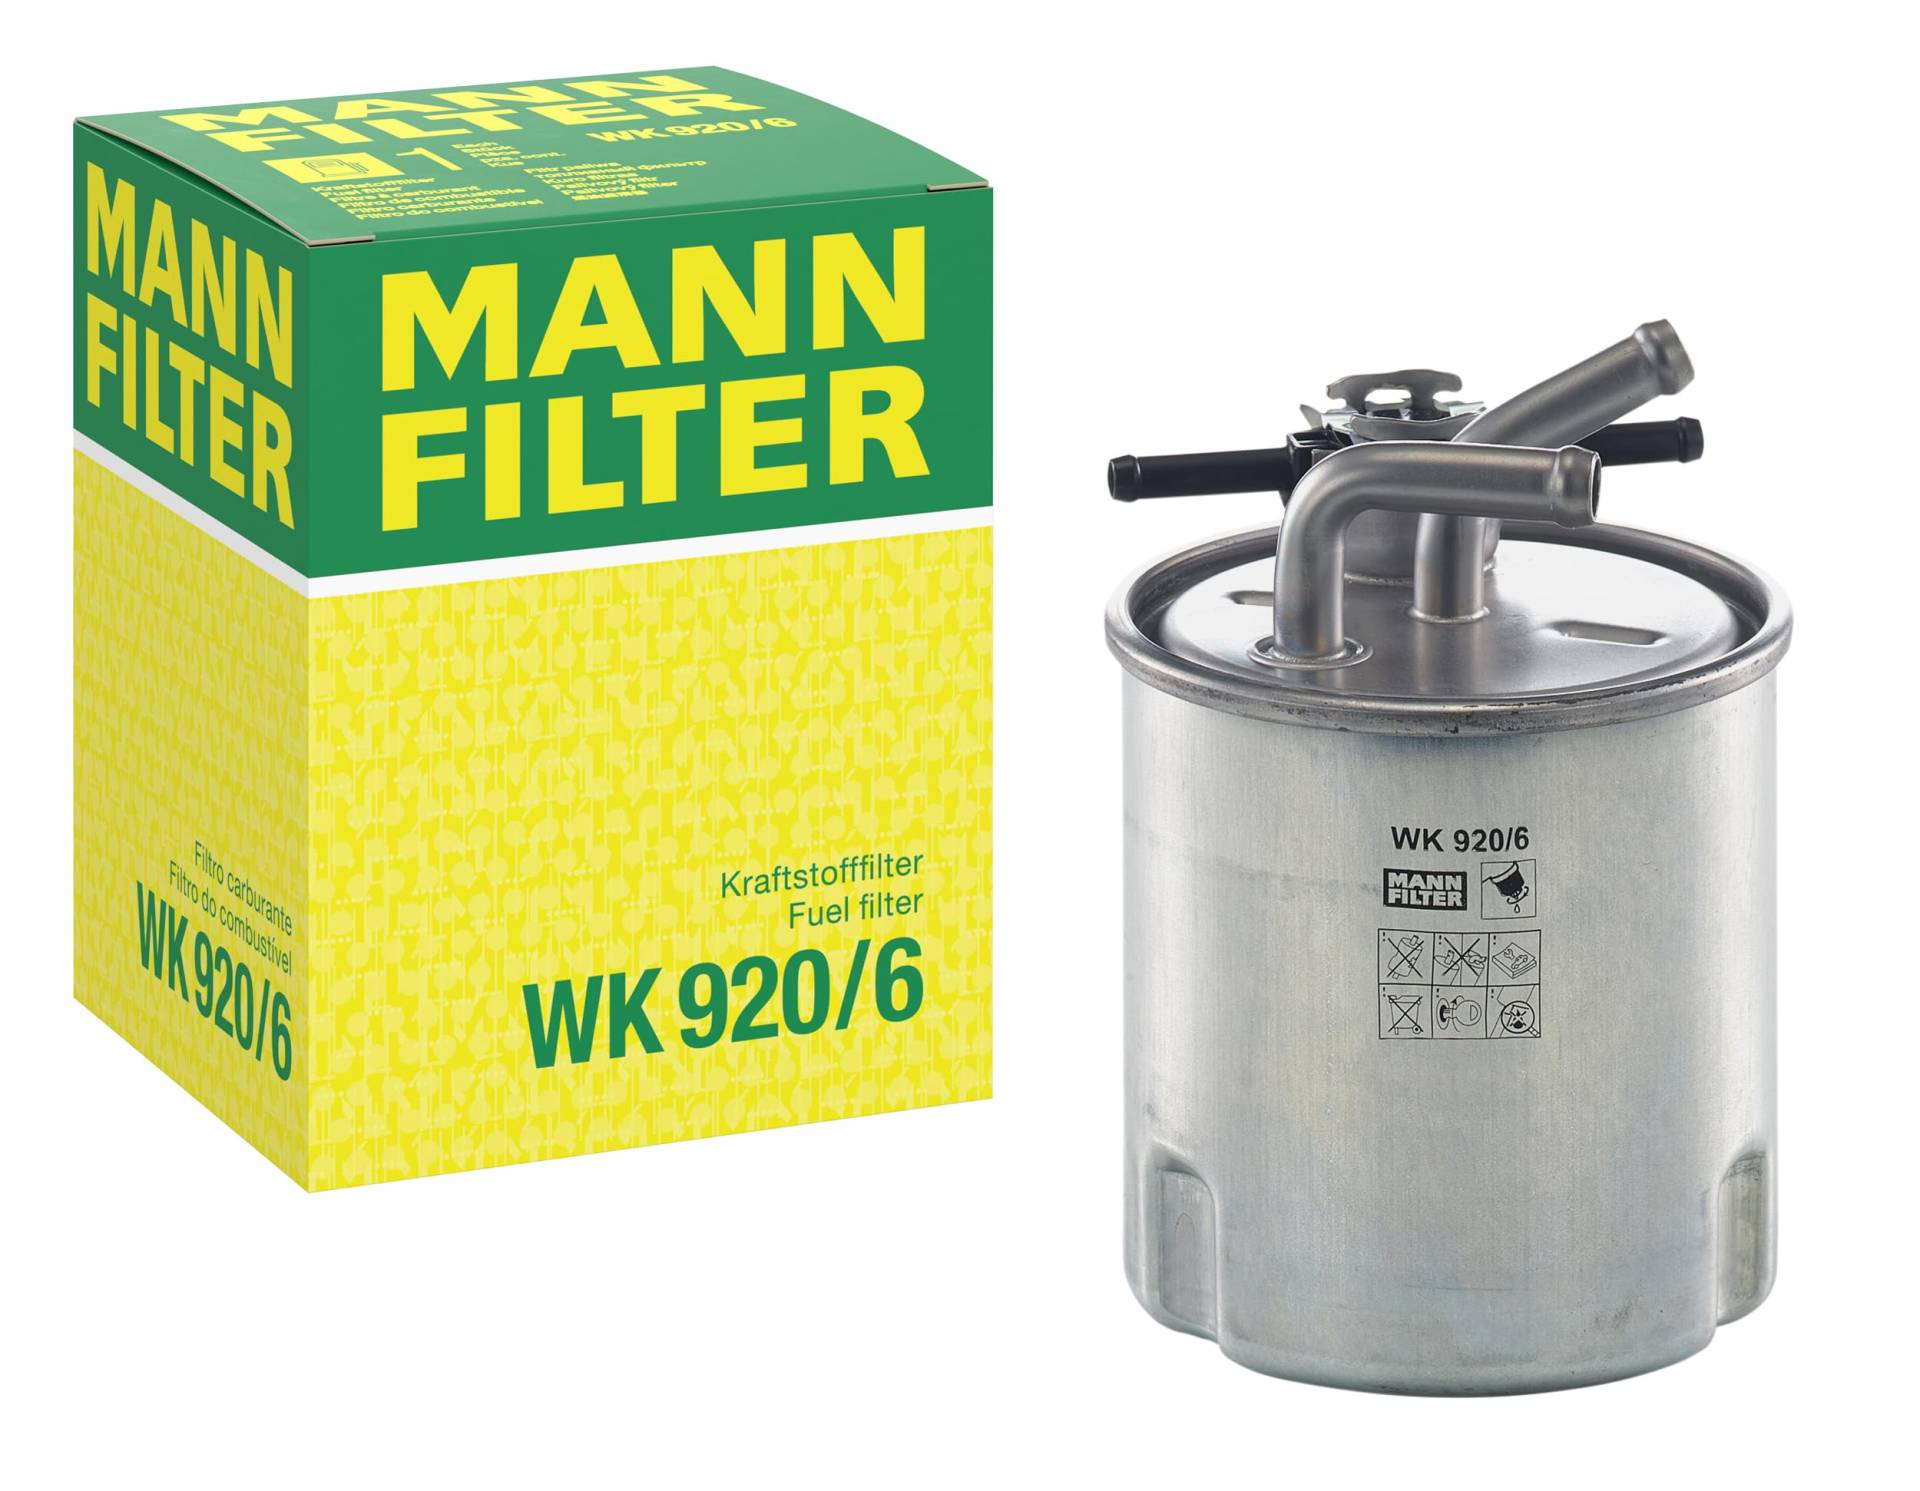 MANN-FILTER WK 920/6 Kraftstofffilter – Für PKW von MANN-FILTER